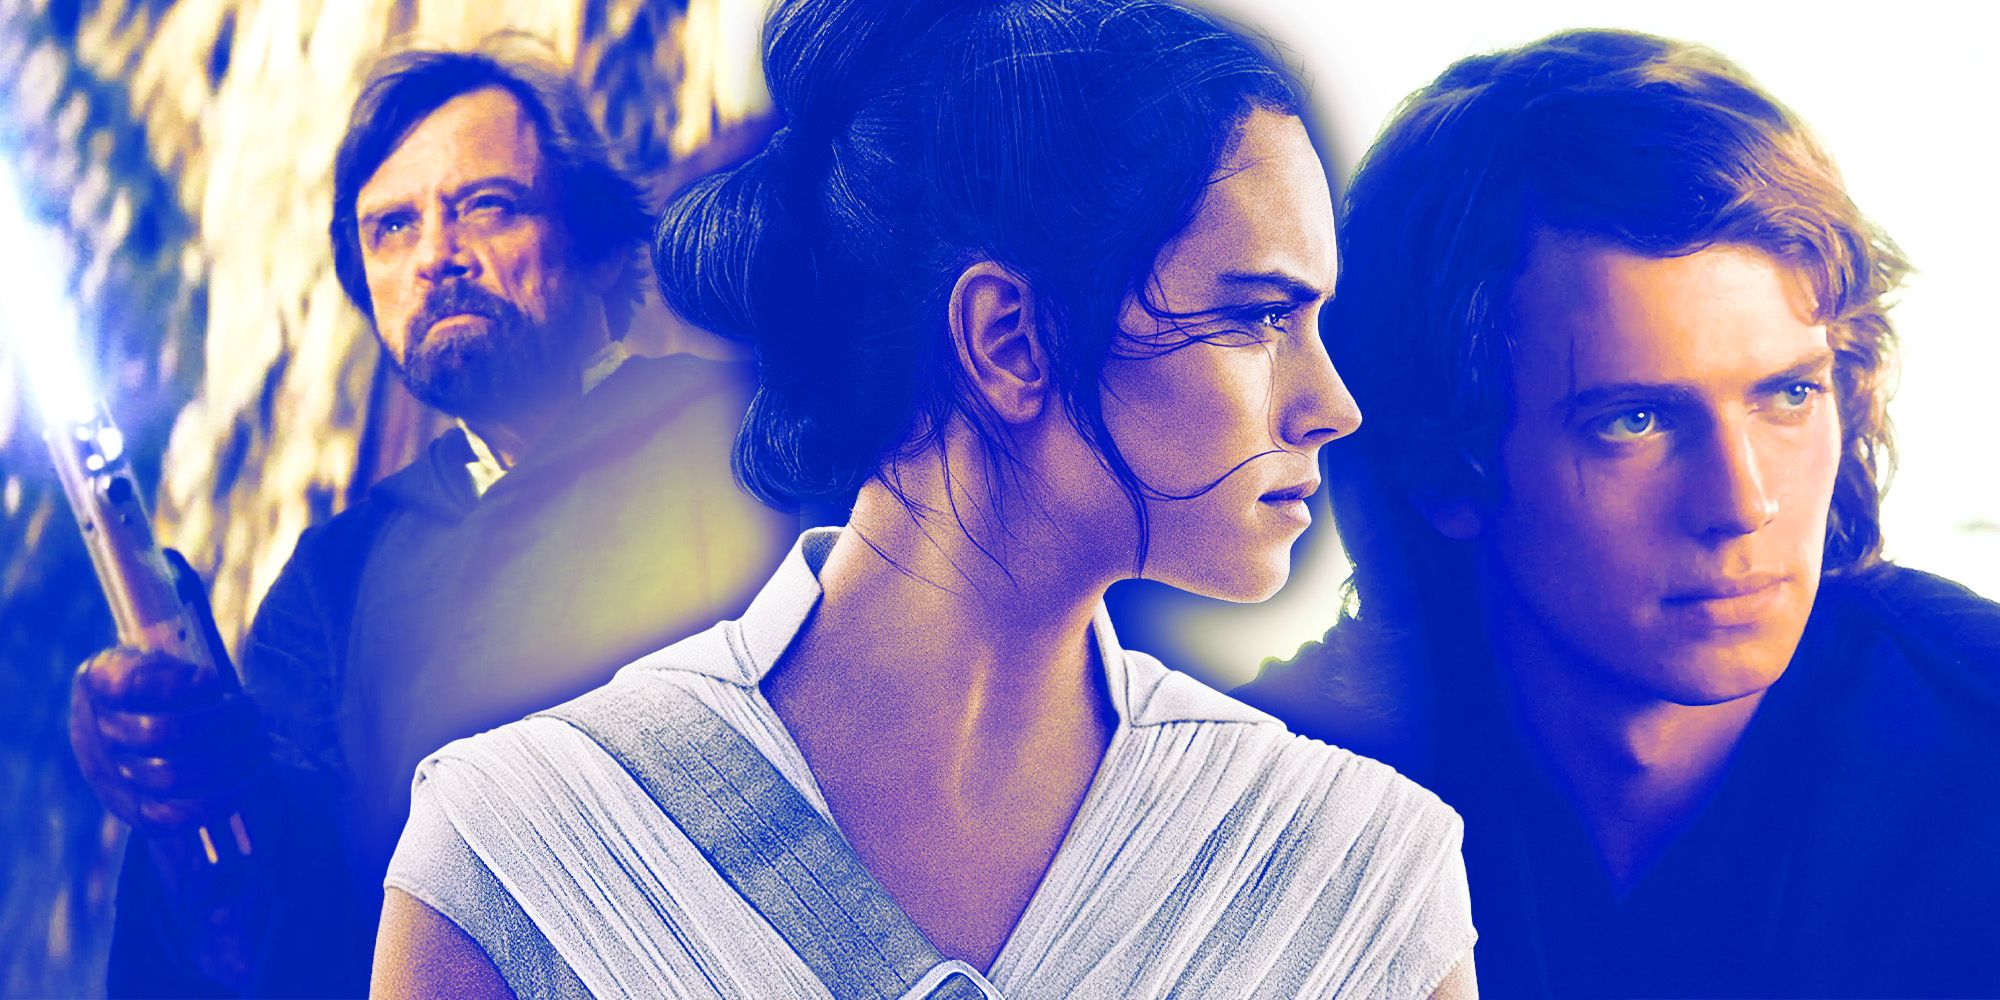 Rey Luke and Anakin Skywalker